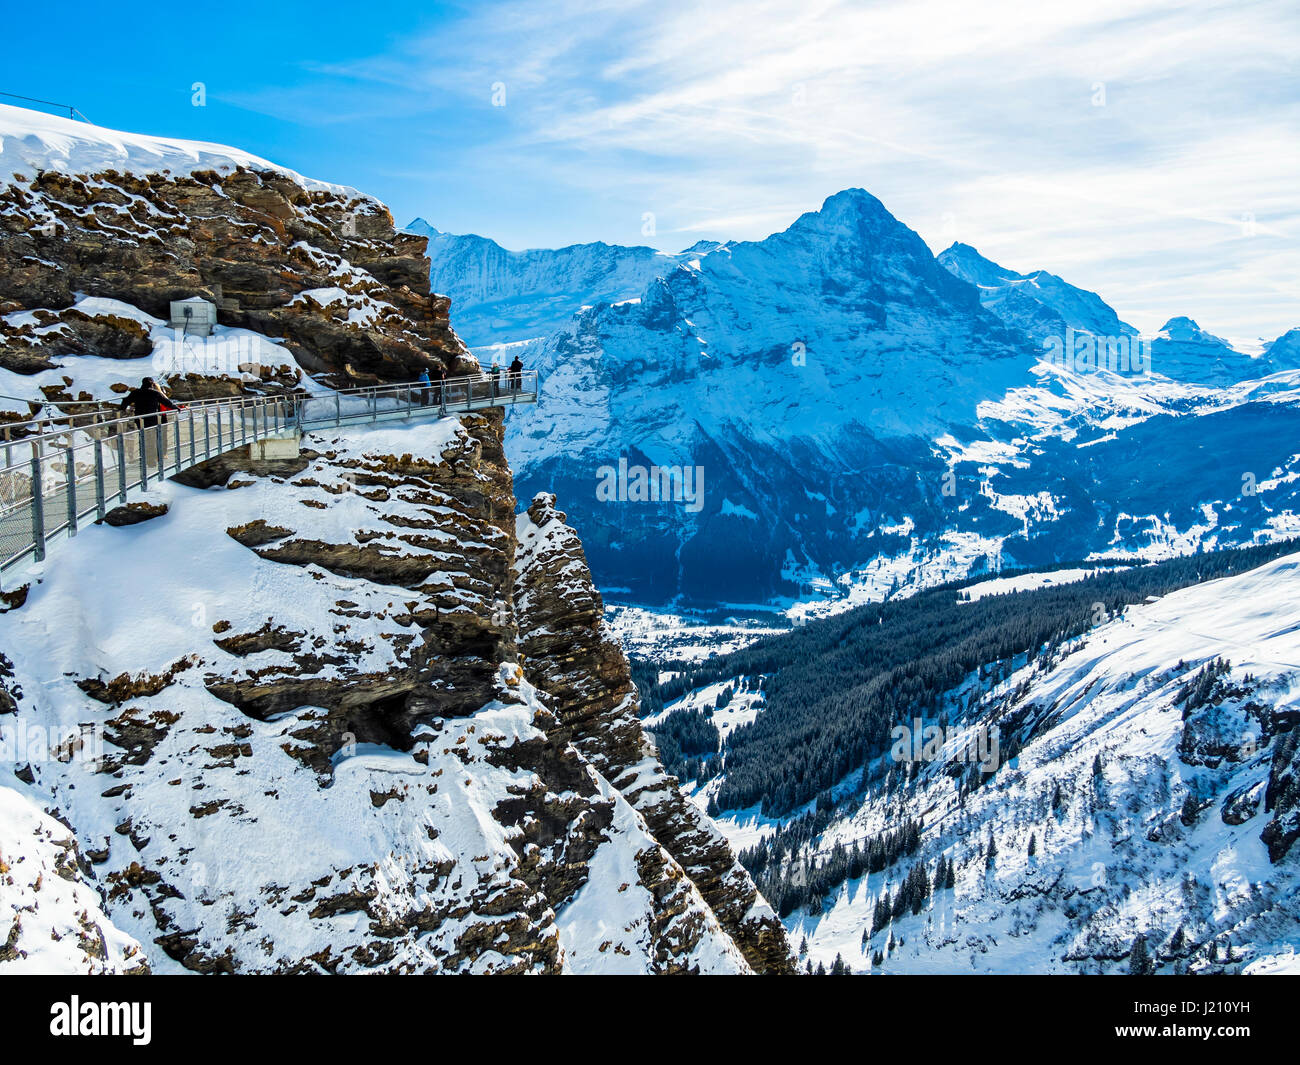 Schweiz, Kanton Bern, Berner Oberland, Interlaken-Oberhasli, primero, Grindelwald, Blick vom Primer Cliff Walk auf den Eiger und die Eiger Nordwand Foto de stock